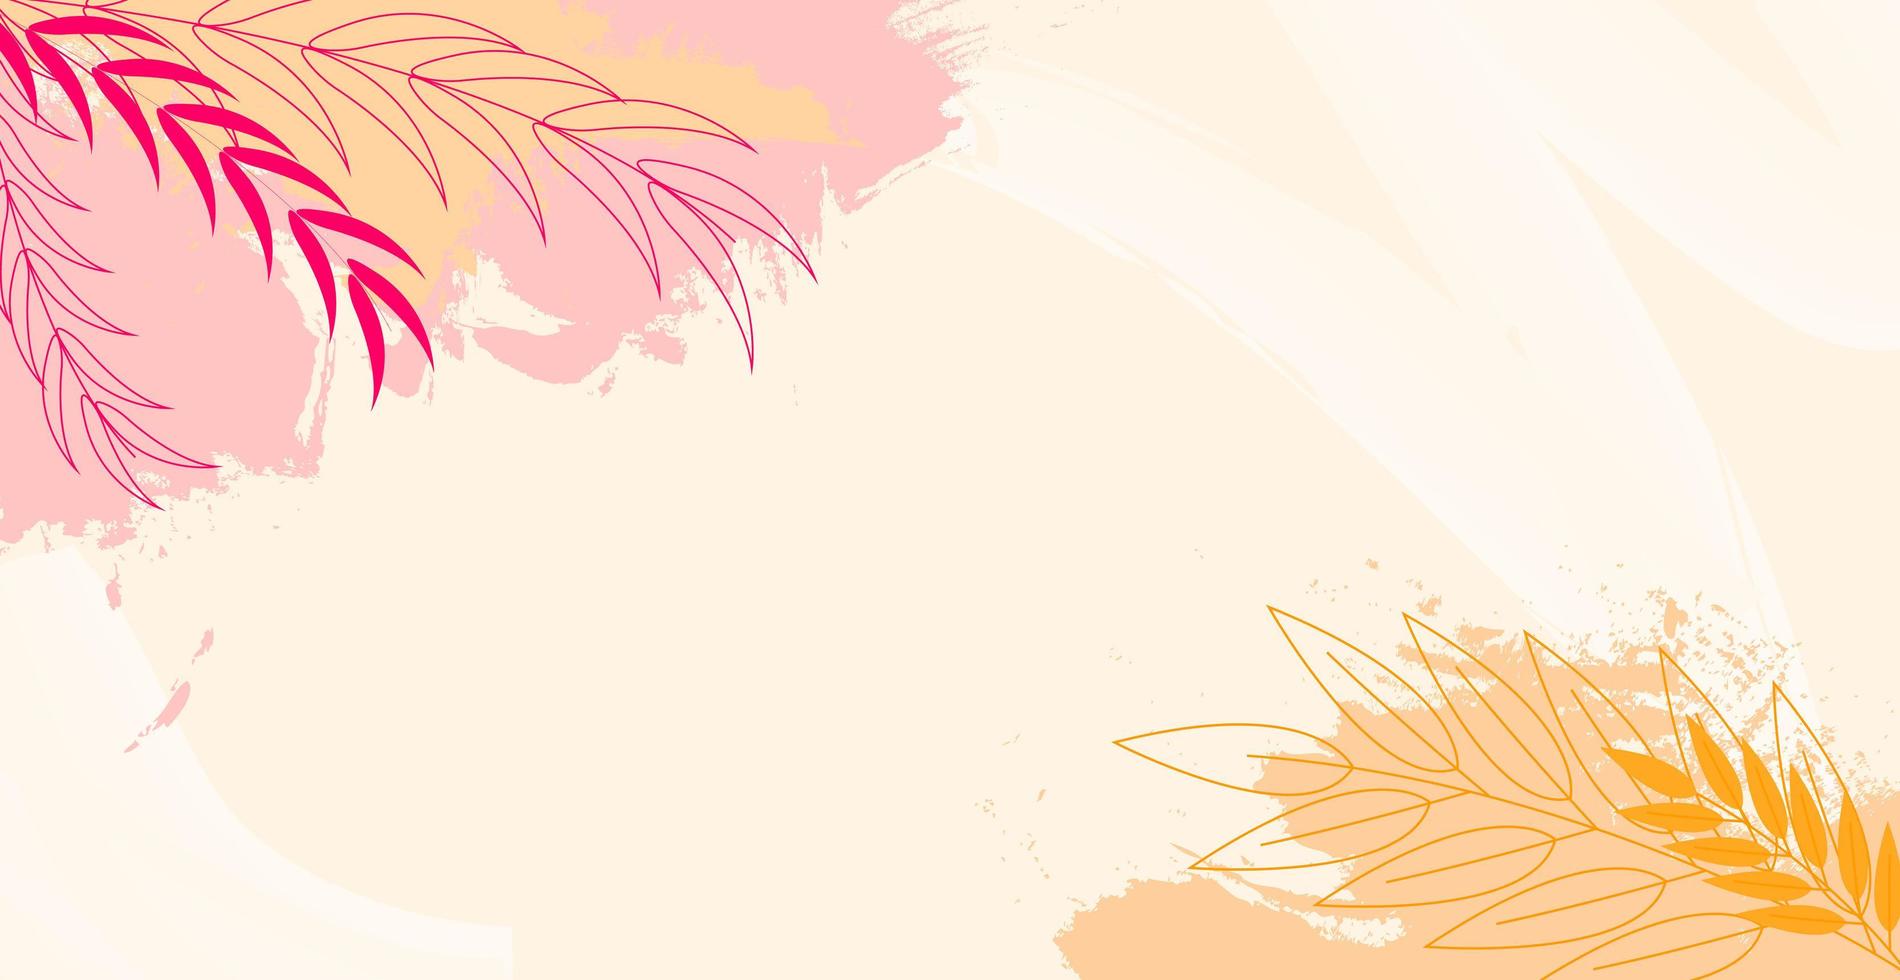 modelo de web moderno abstrato arte panorâmica com elementos florais e geométricos. adequado para publicidade, publicações de mídia social, design de banner da internet - vetor